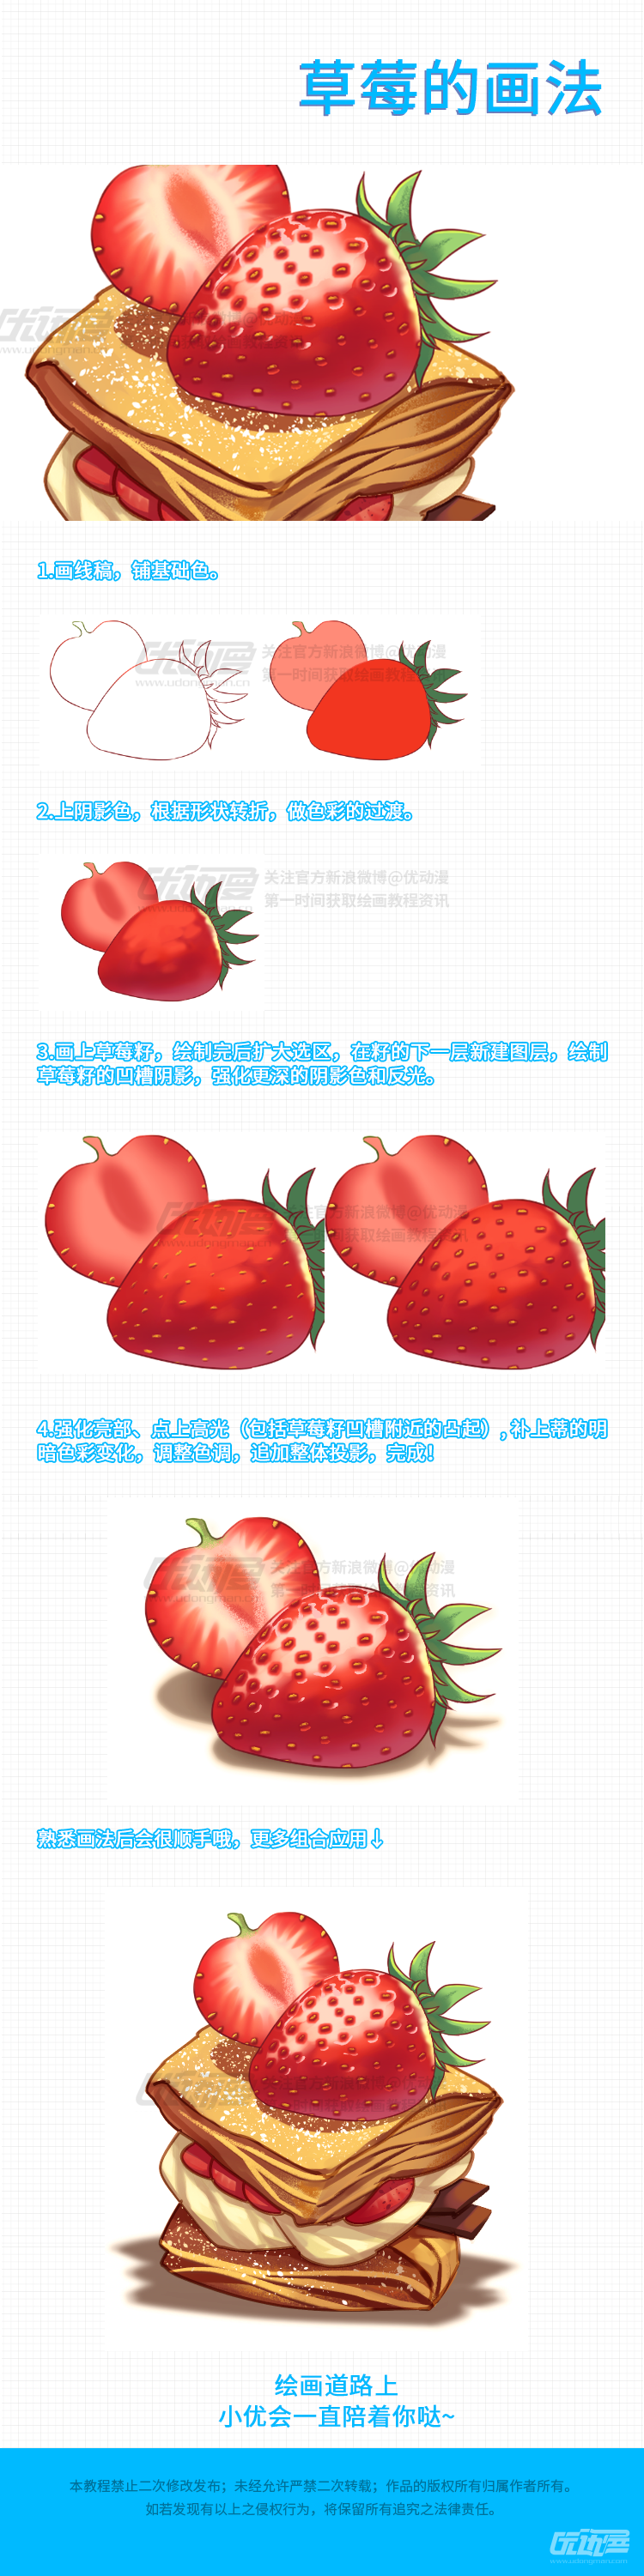 草莓的画法.png